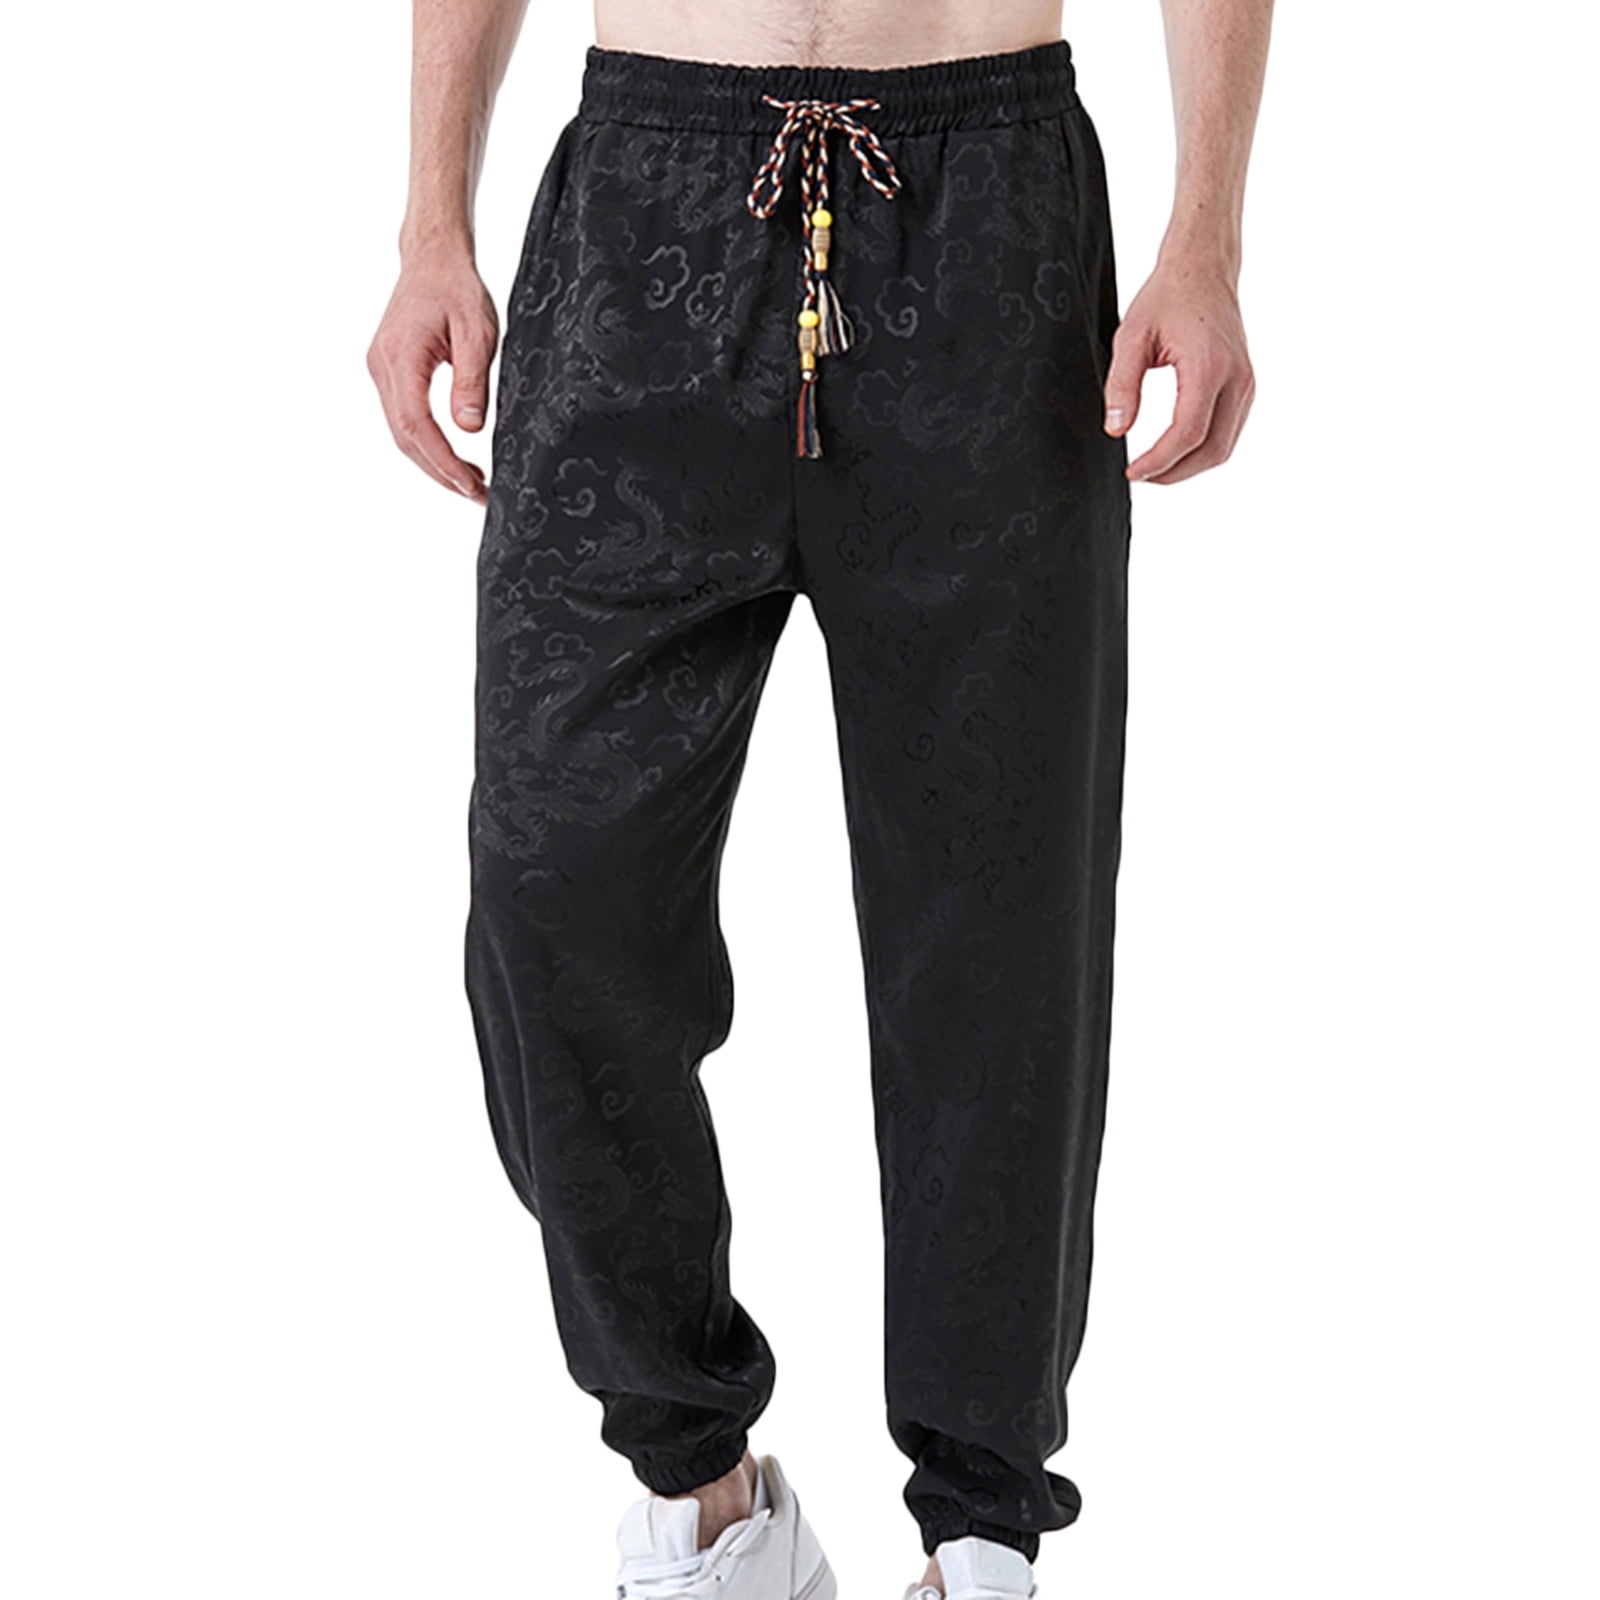 Men's Casual Cotton Sweatpants Ankle-Length Elastic Waist Loose Fit Lounge  Pants Trendy Solid Color Sports Pants - Walmart.com